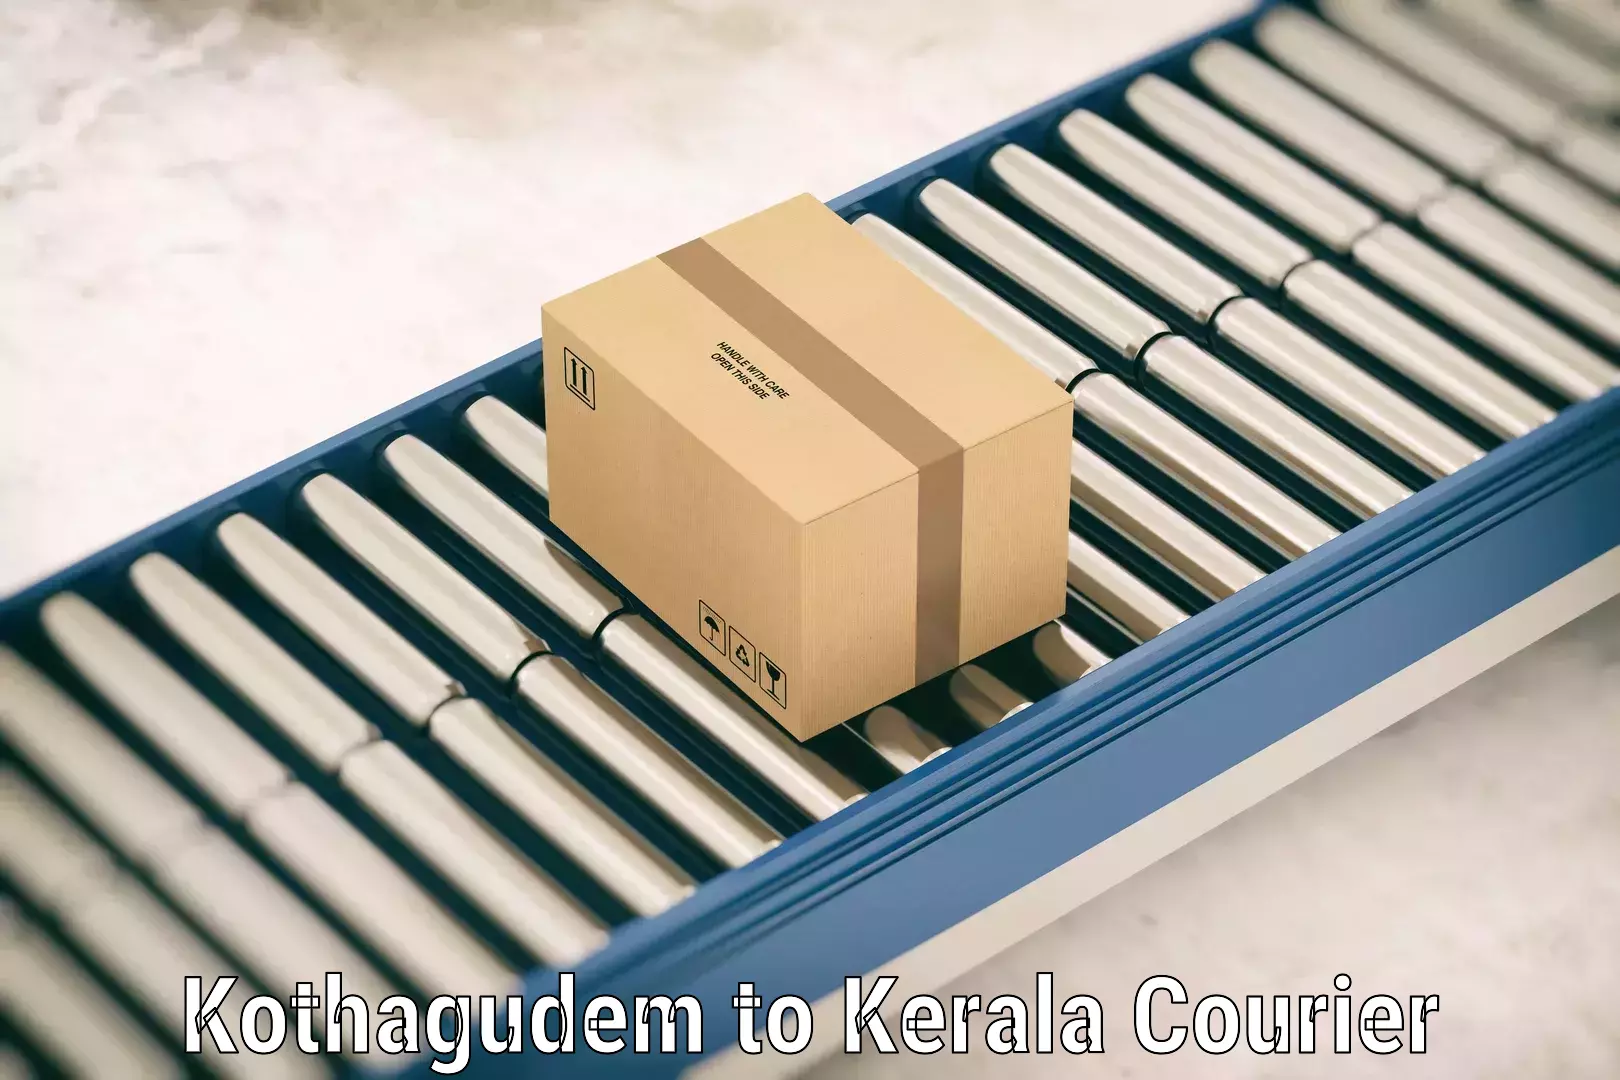 Luggage delivery system Kothagudem to Kannur